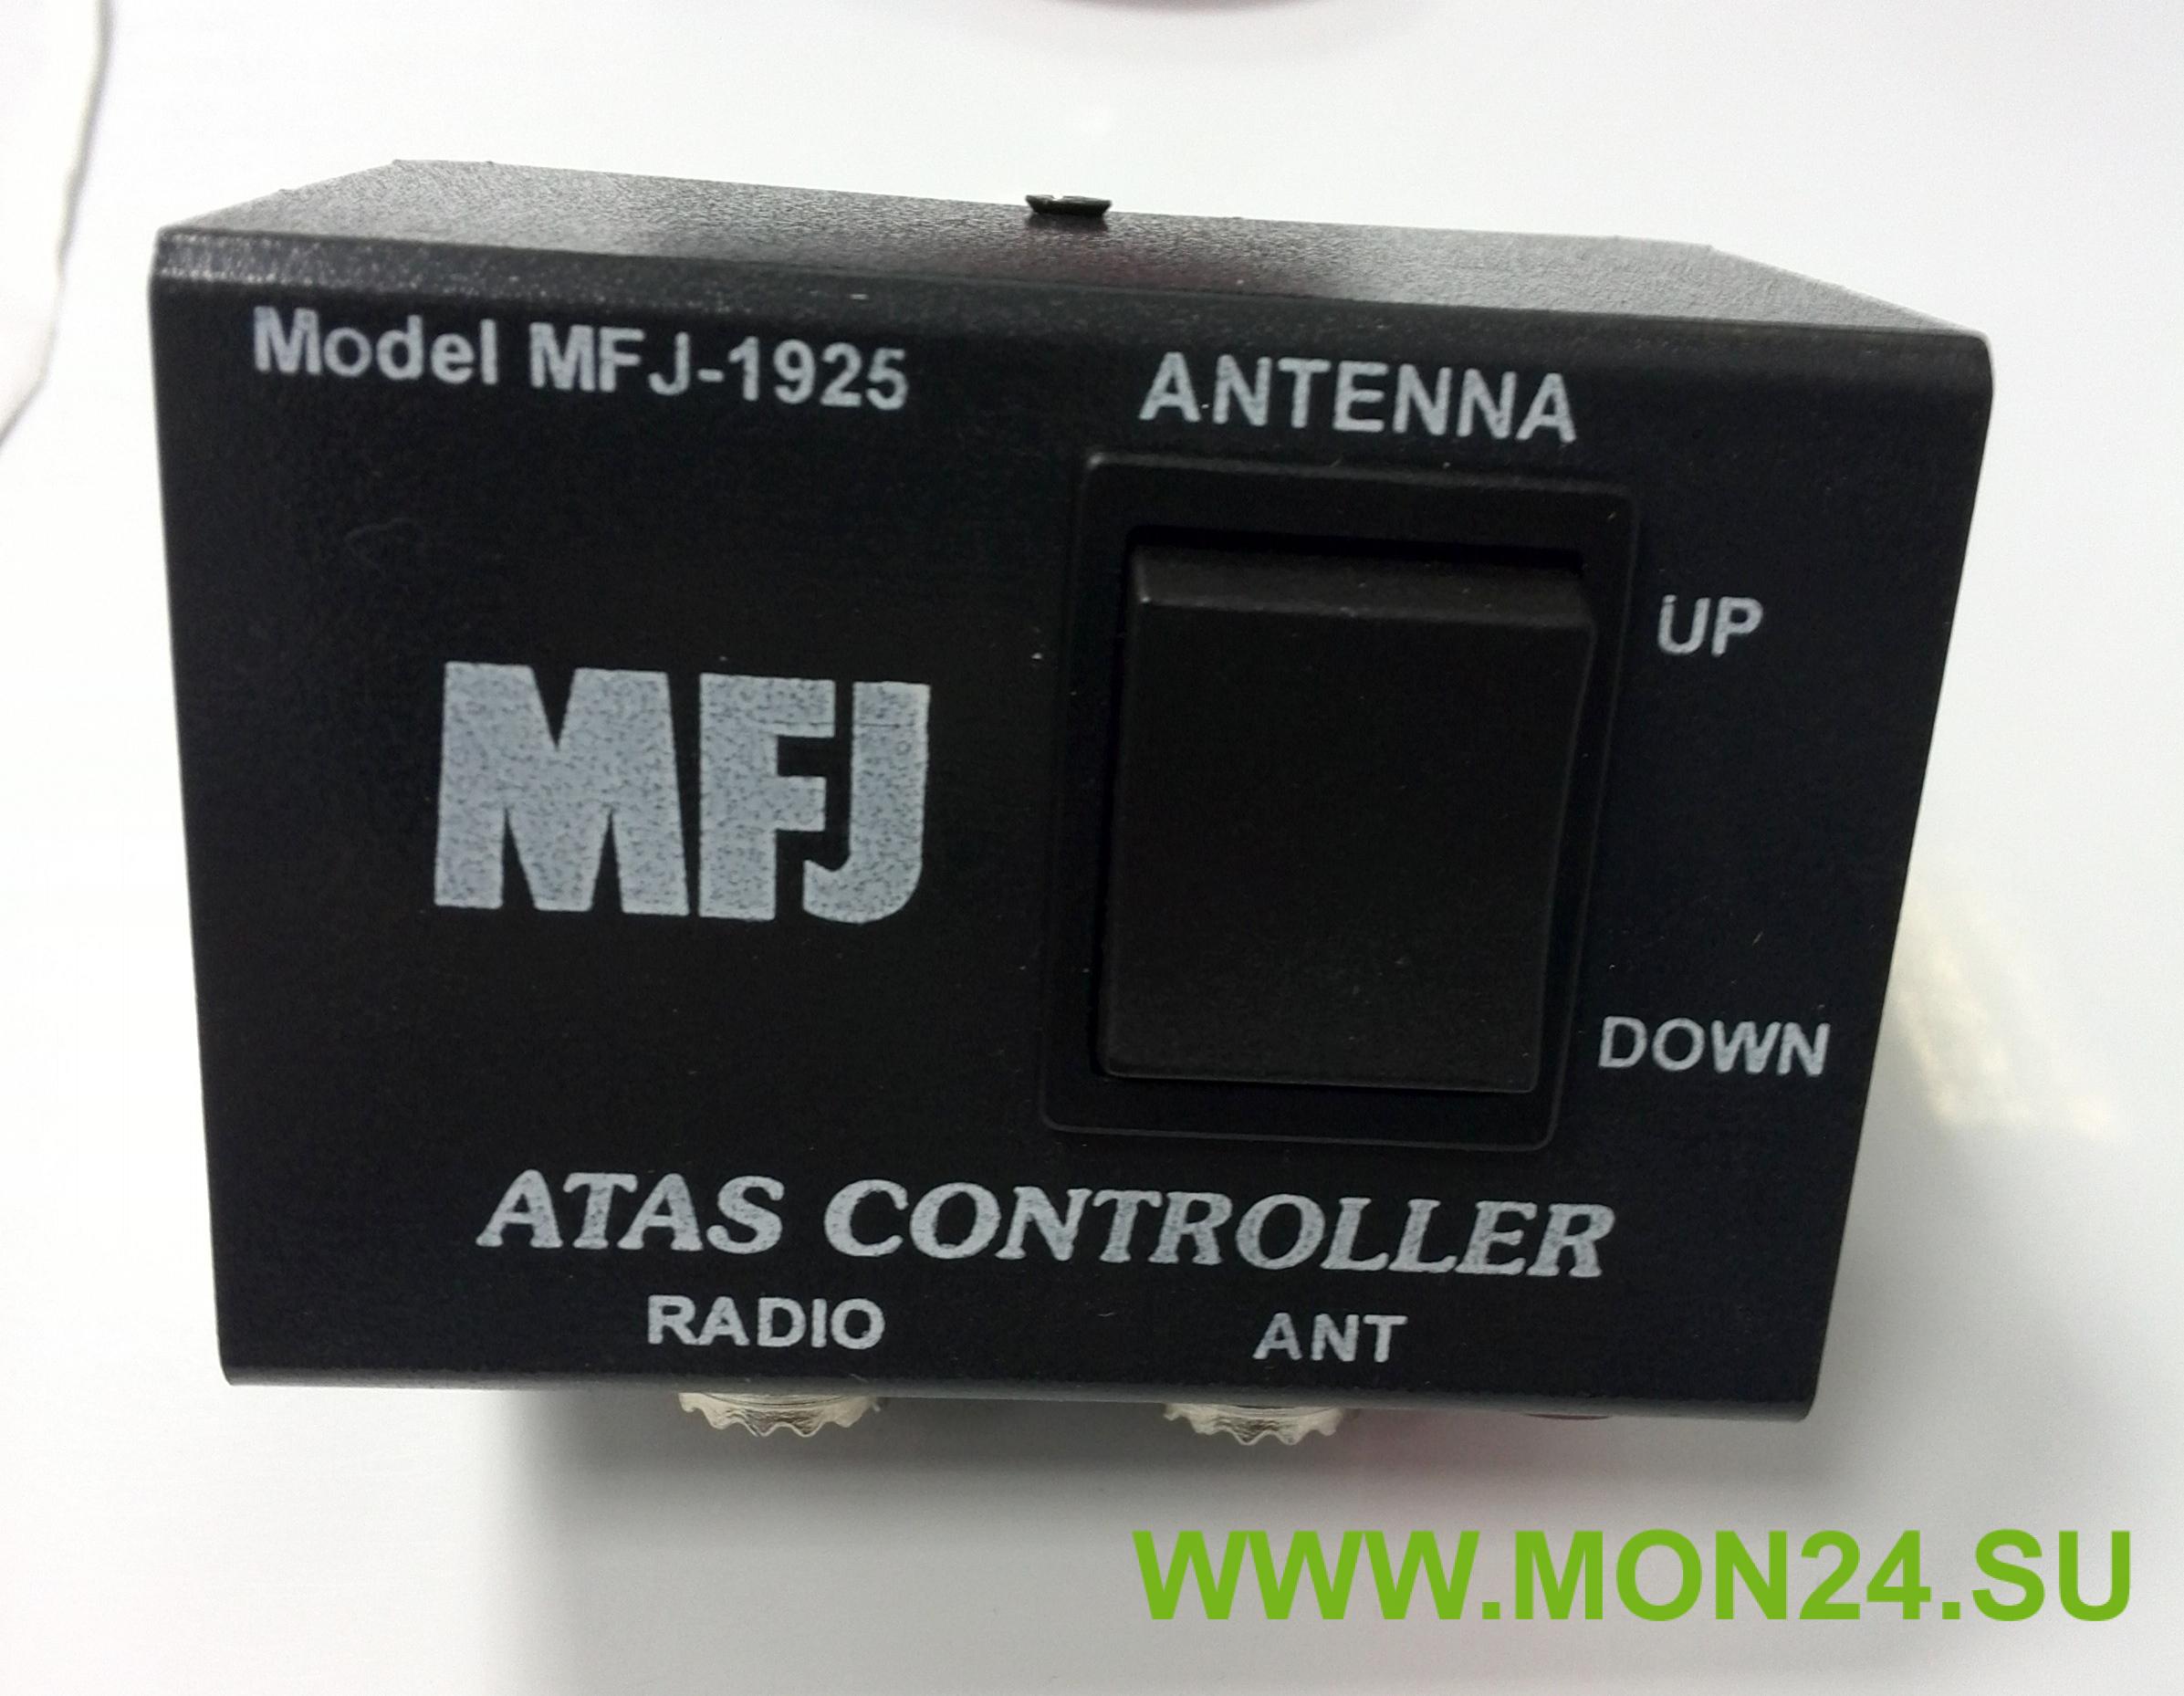 Блок ручного управления MFJ-1925 для антенны ATAS-120